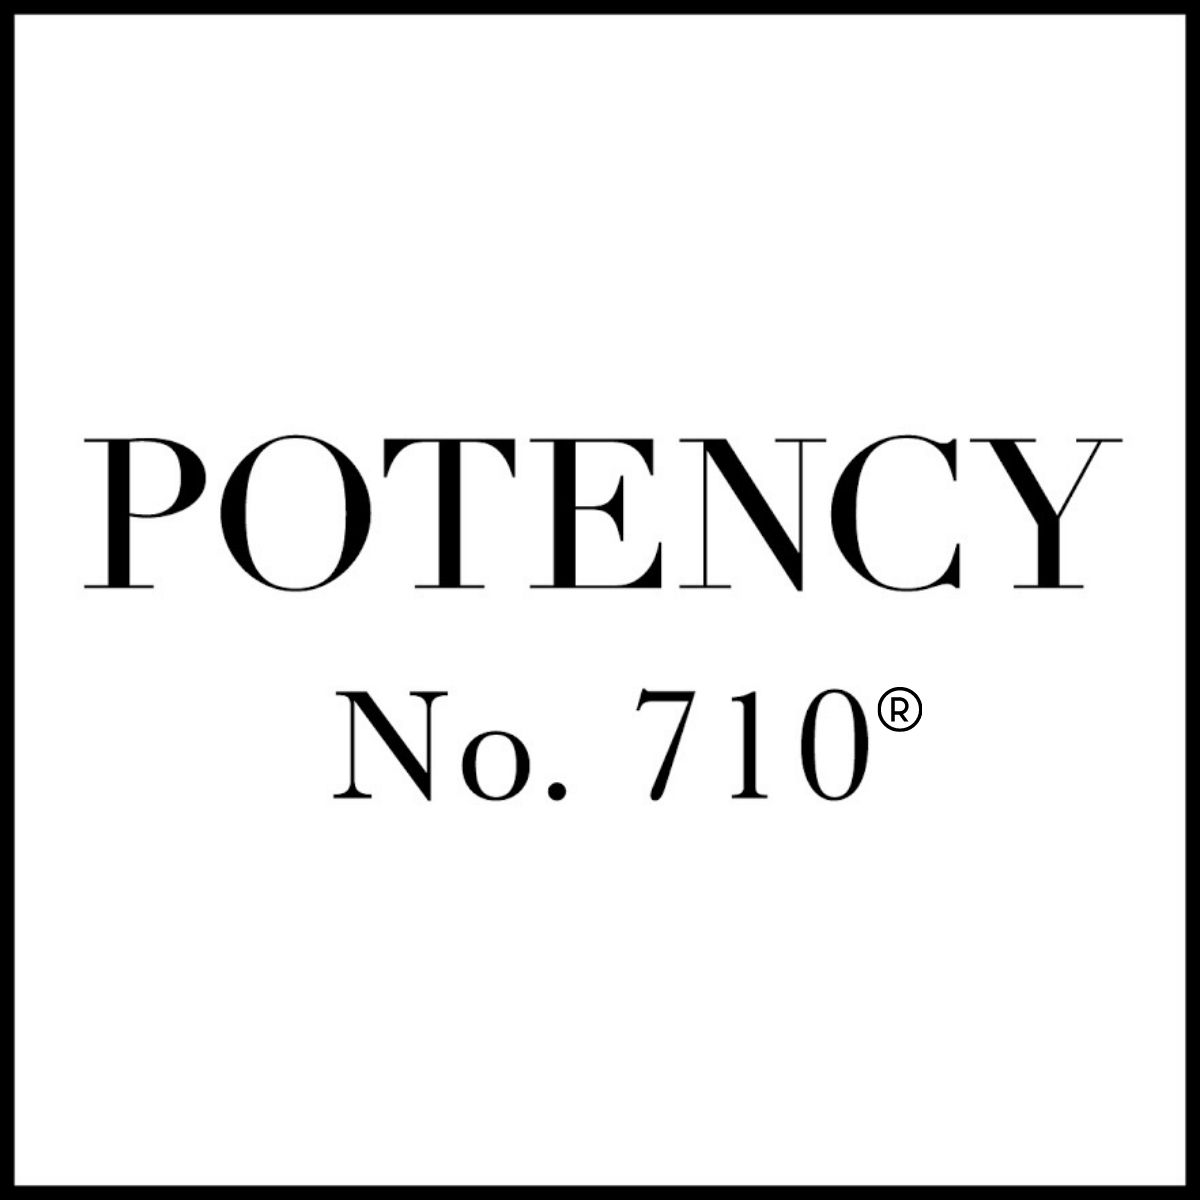 Potency No. 710